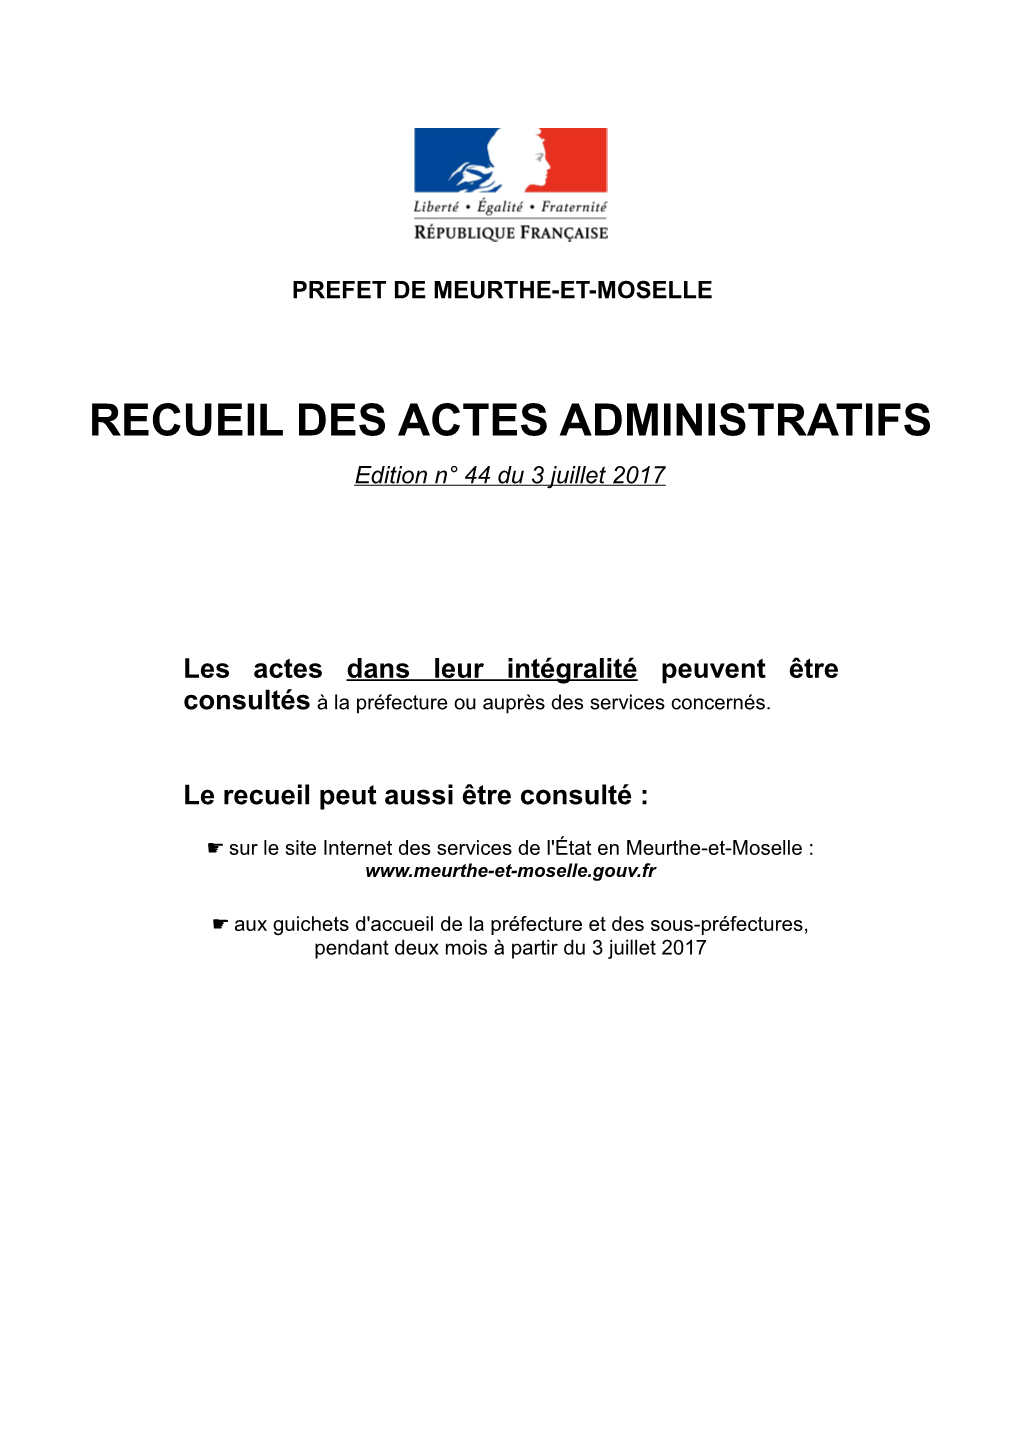 RECUEIL DES ACTES ADMINISTRATIFS Edition N° 44 Du 3 Juillet 2017